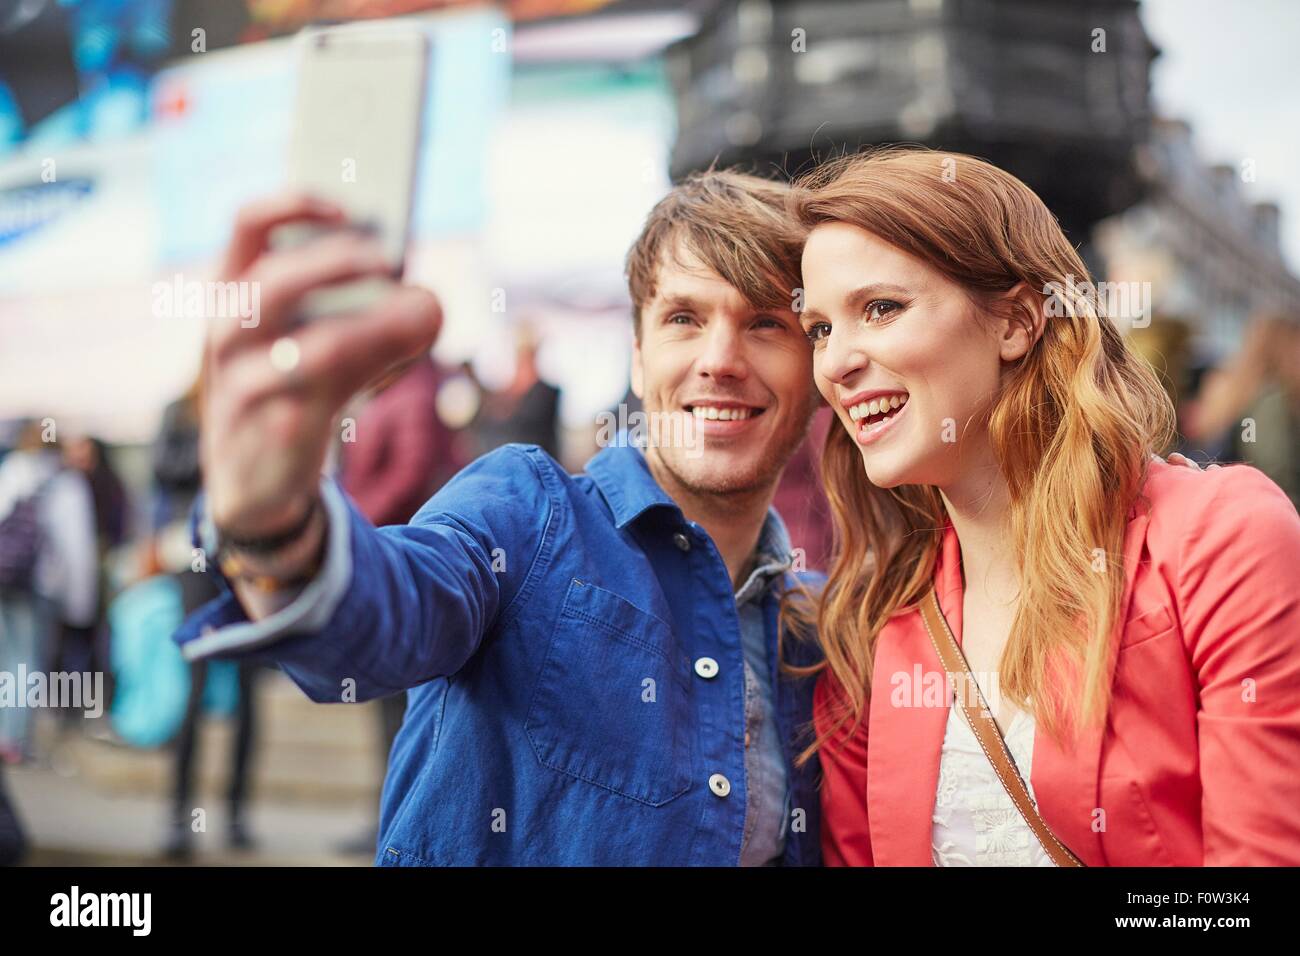 Turista giovane tenendo selfie sullo smartphone a Piccadilly Circus, London, Regno Unito Foto Stock